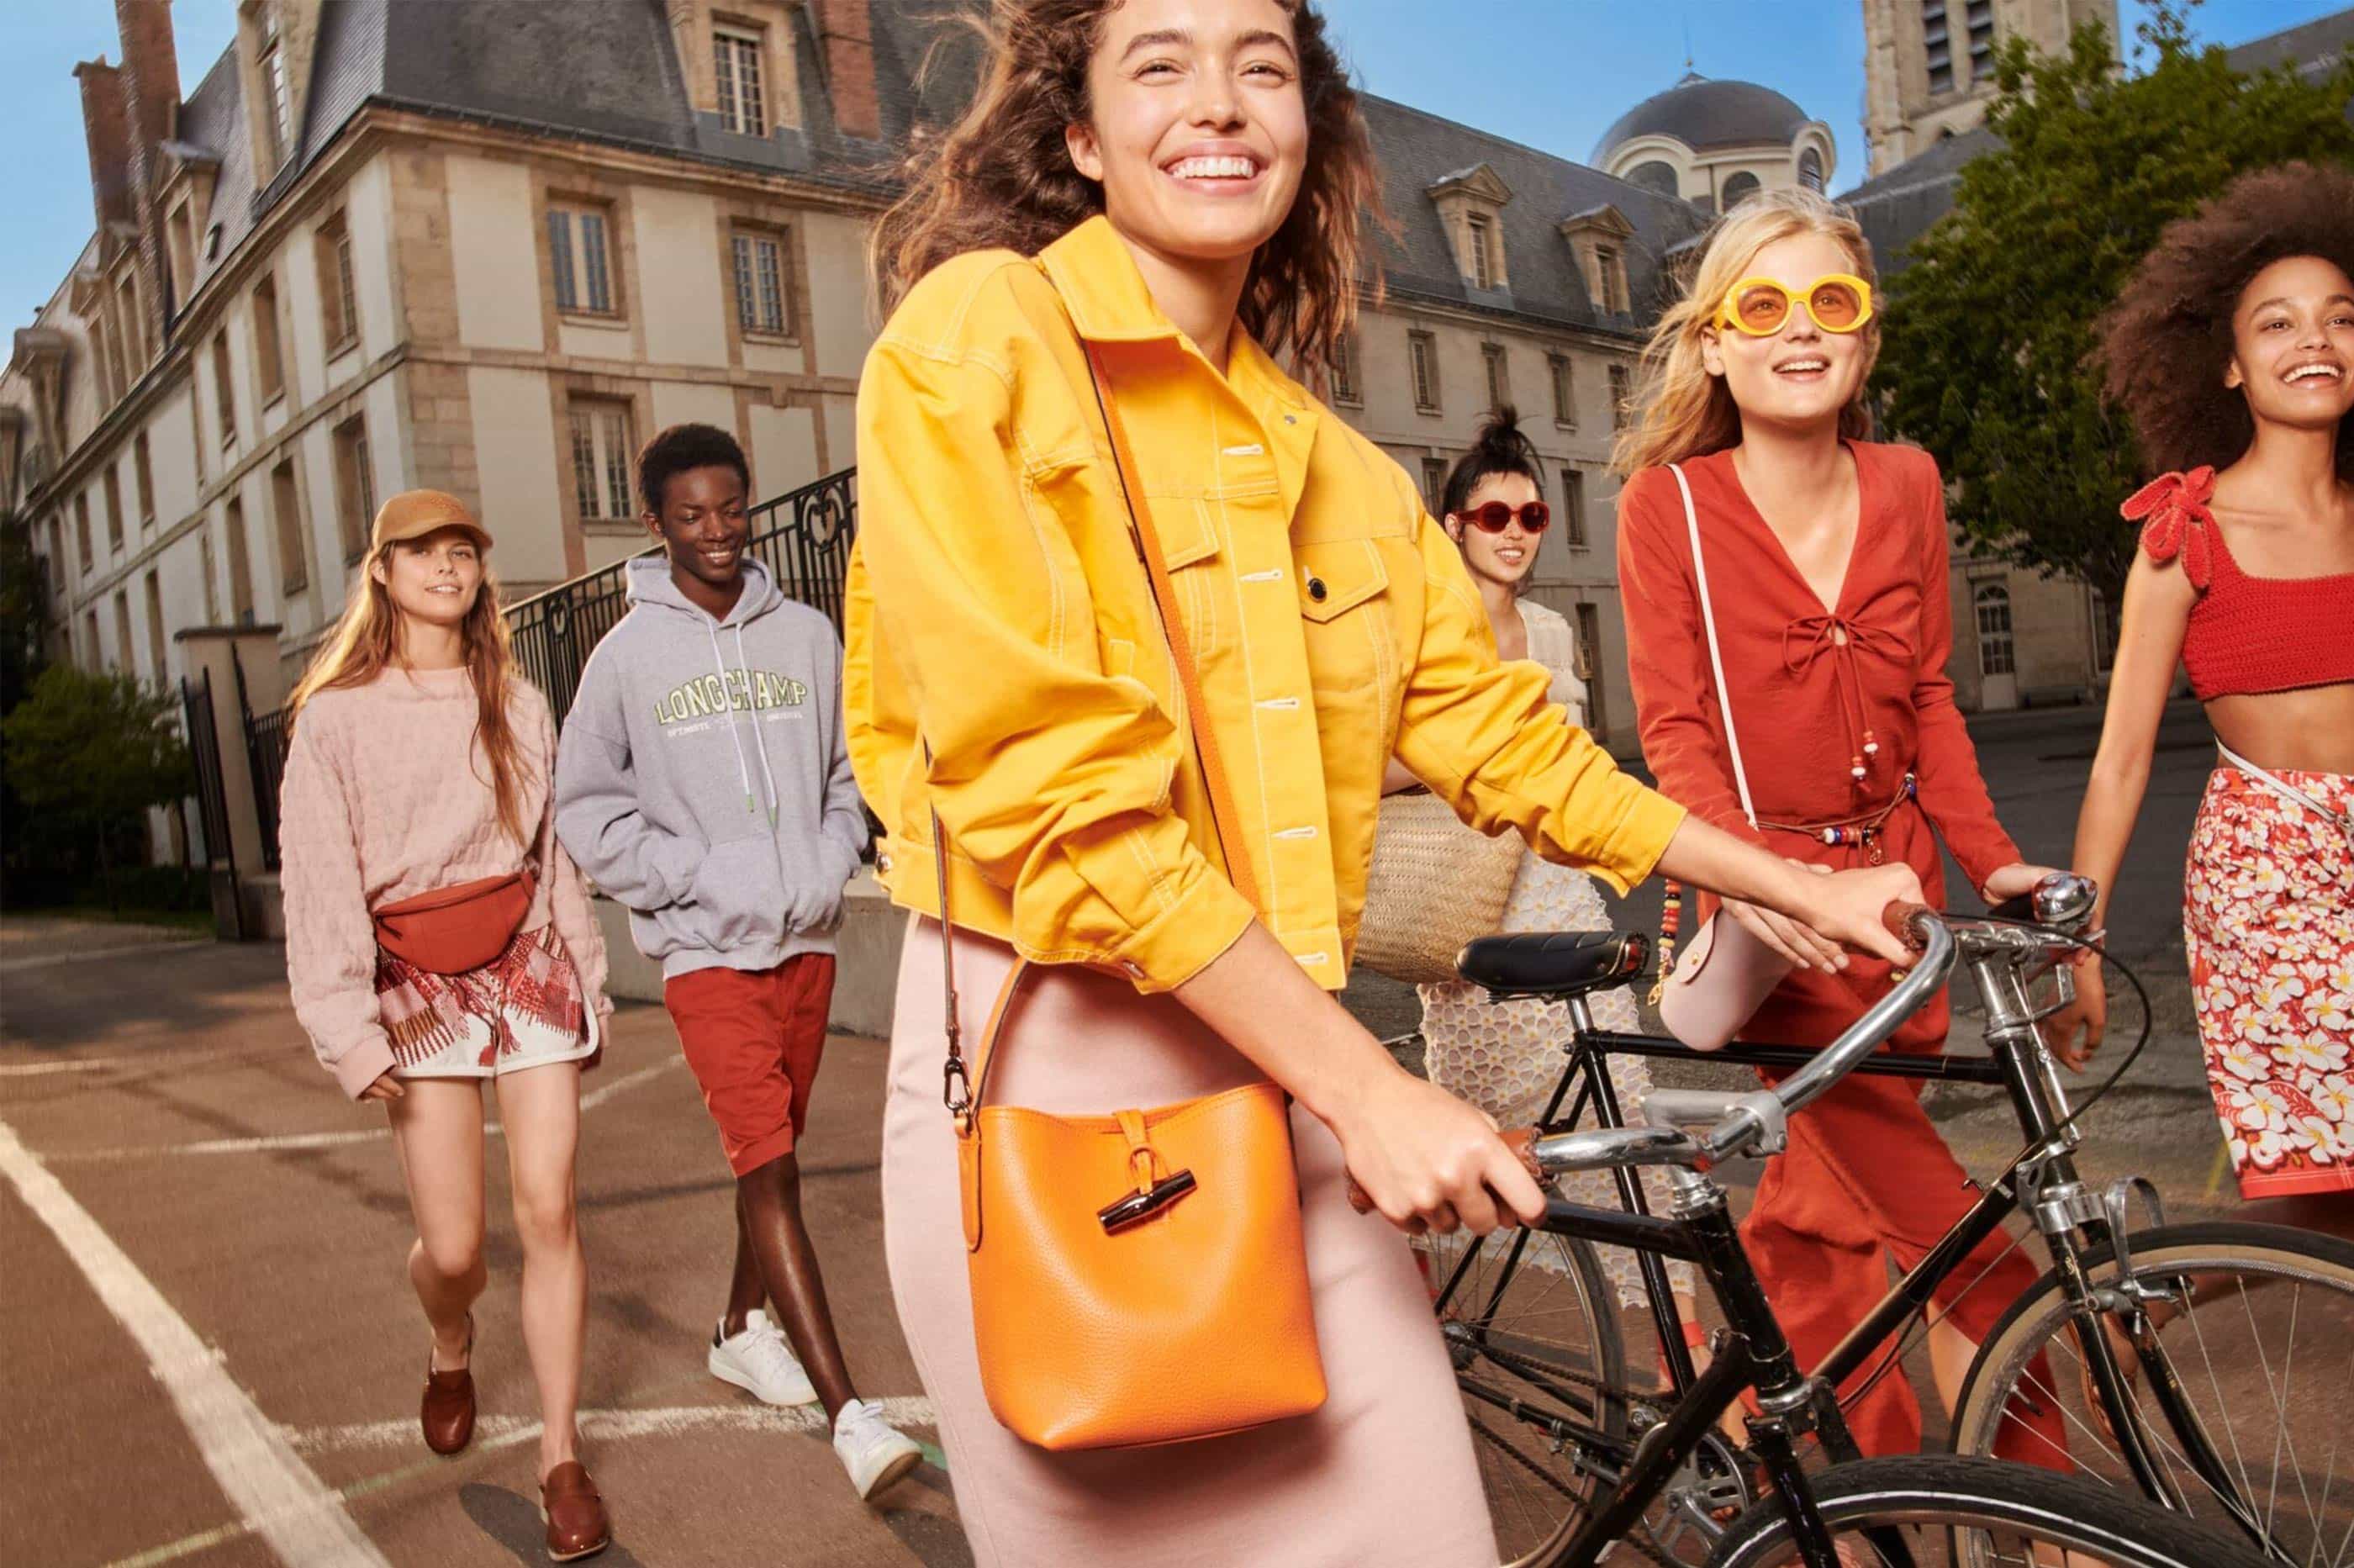 Elaine Constantine captures the colourful joie de vivre of youth for Longchamp